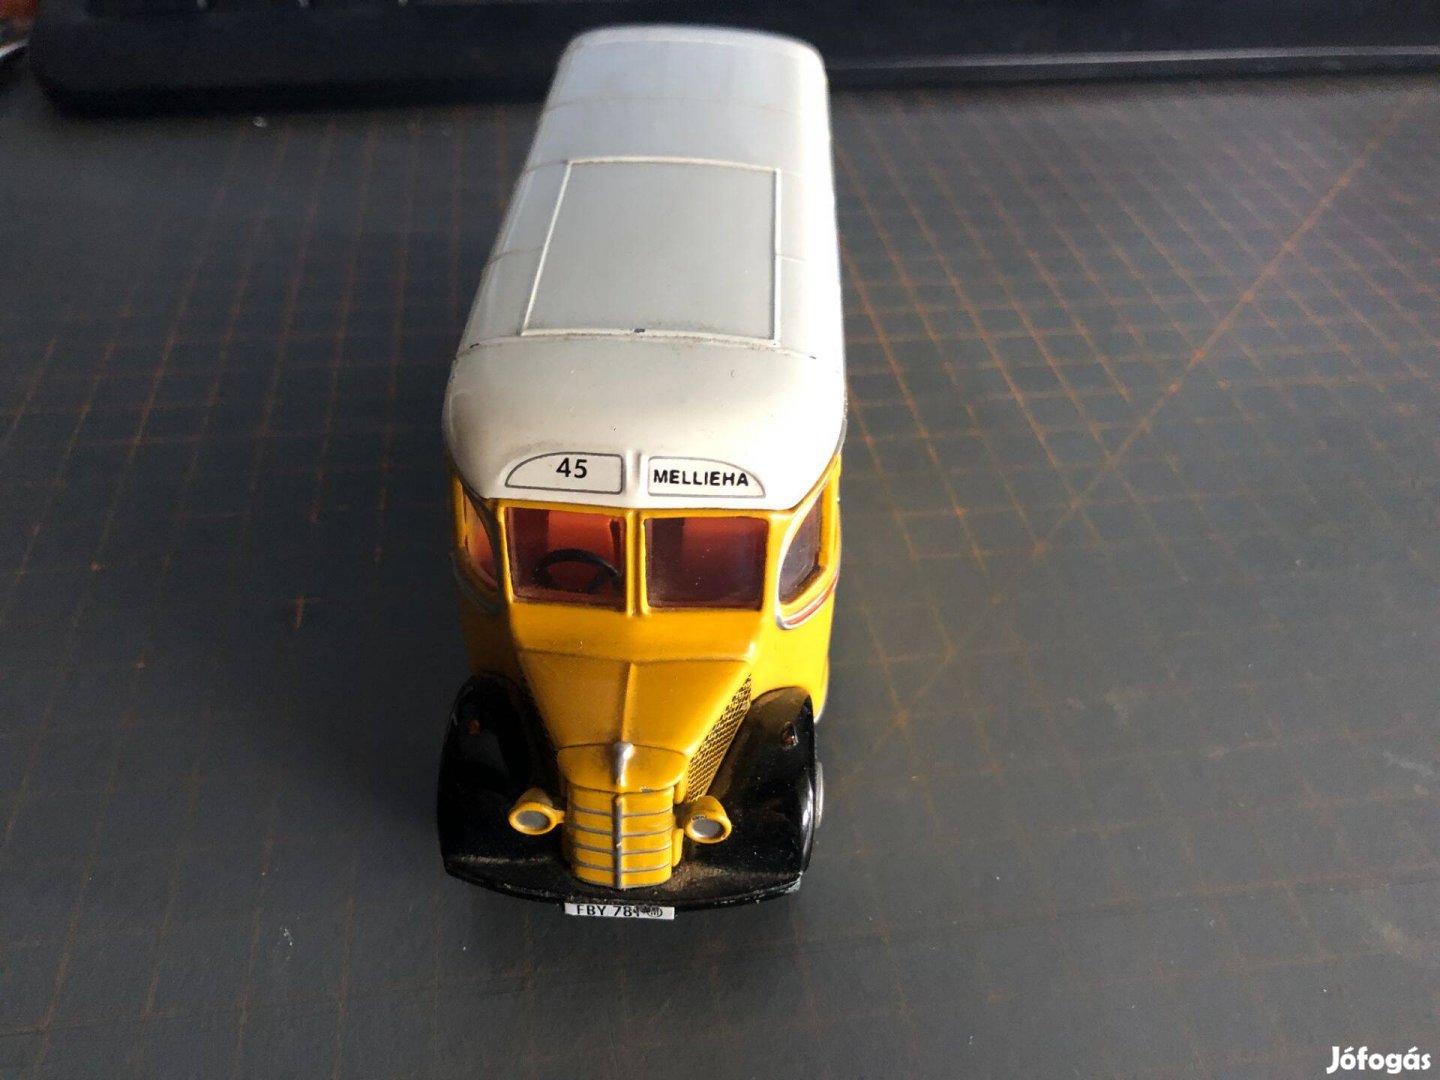 Modell Corgi autó busz